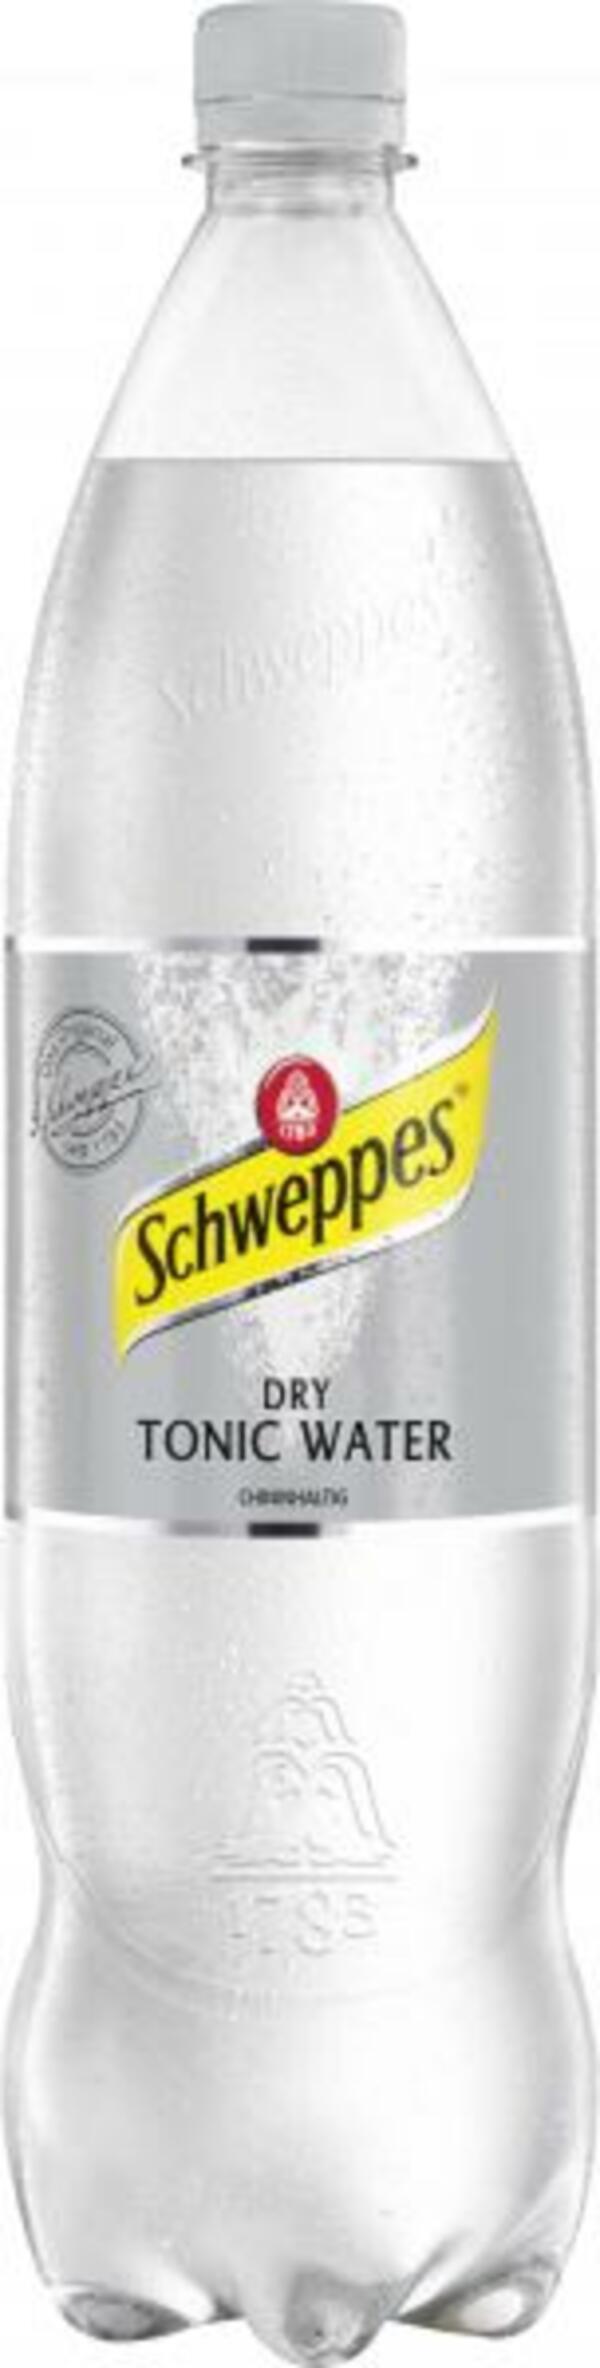 Bild 1 von Schweppes Dry Tonic Water (Einweg)